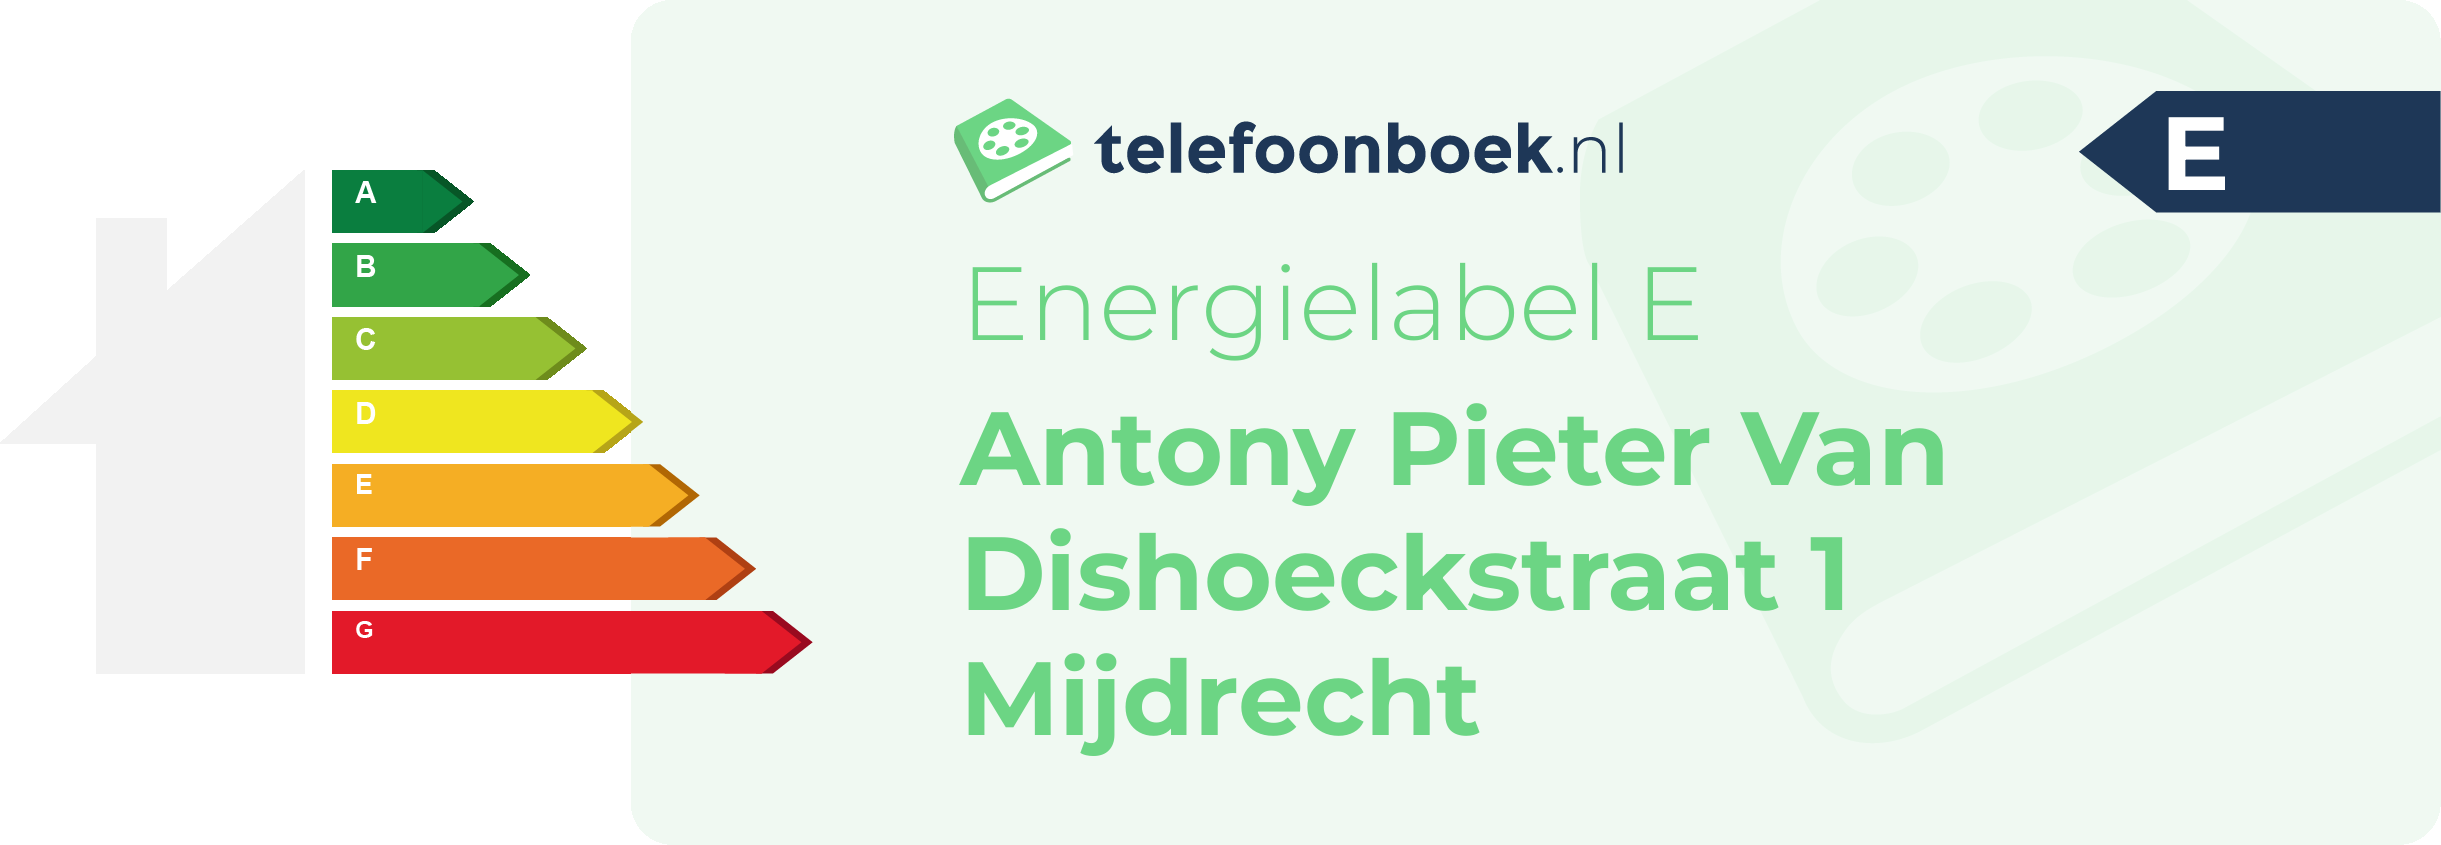 Energielabel Antony Pieter Van Dishoeckstraat 1 Mijdrecht